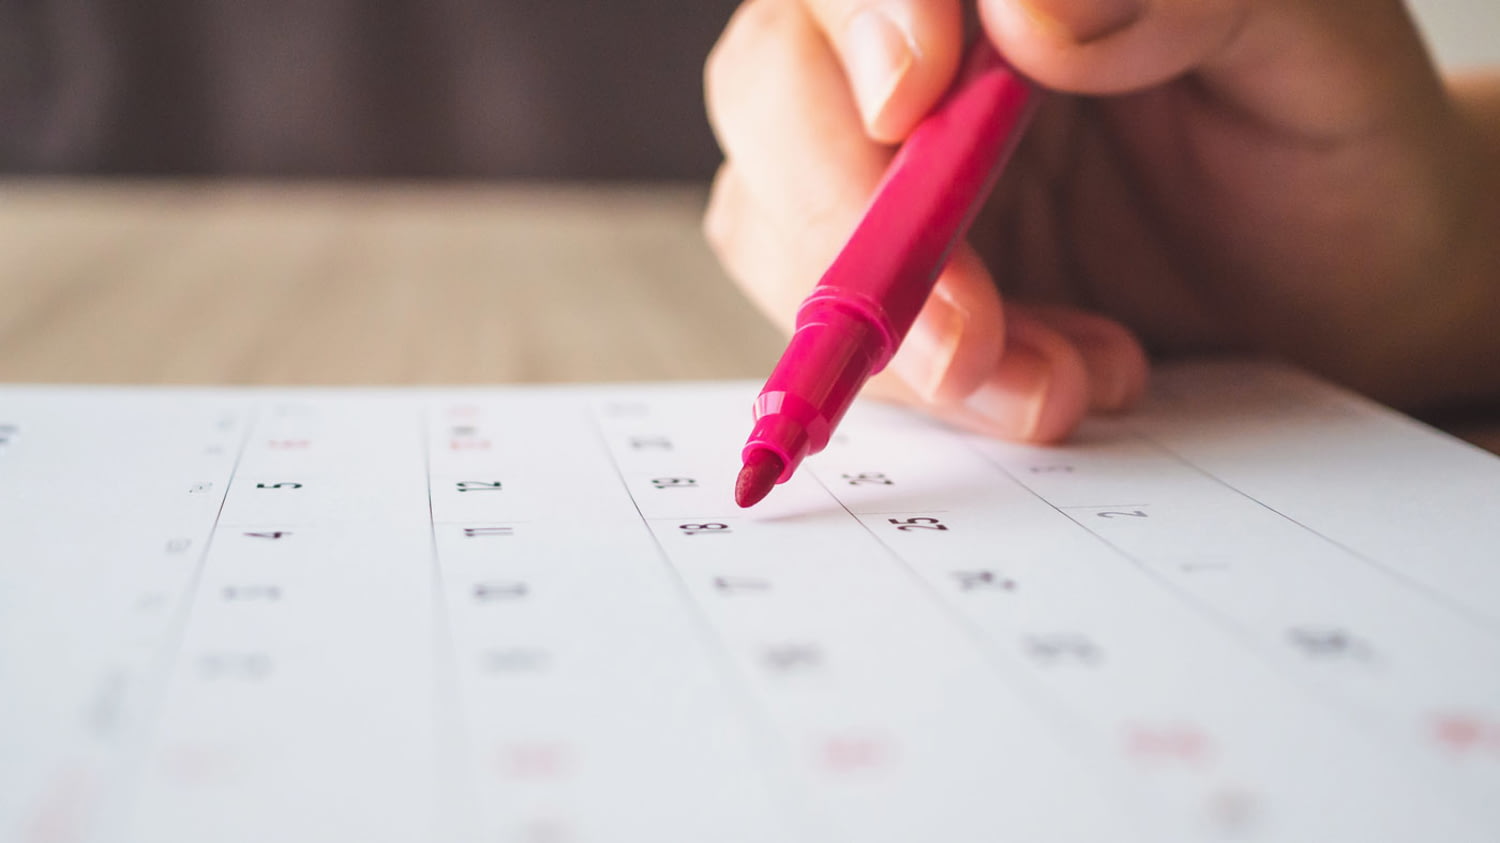 Eine Hand führt einen roten Stift, um einen Eintrag im Kalender zu machen